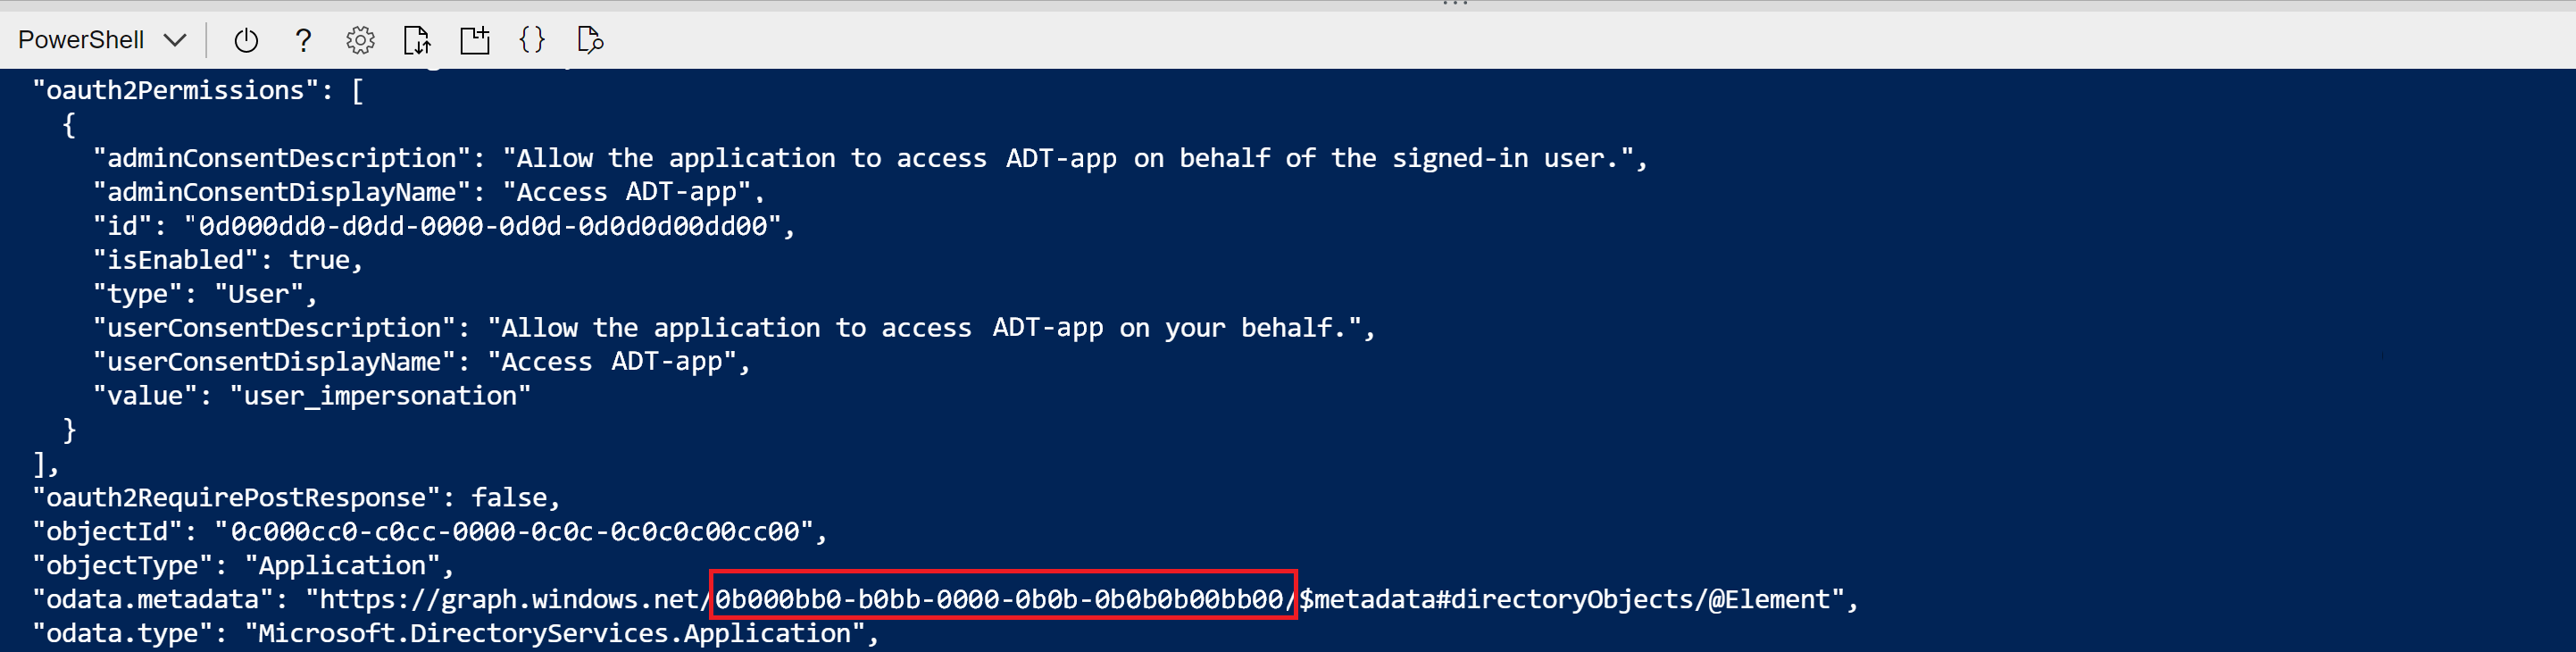 应用注册创建命令的 Cloud Shell 输出的屏幕截图。突出显示了 odata.metadata 中的 GUID 值。